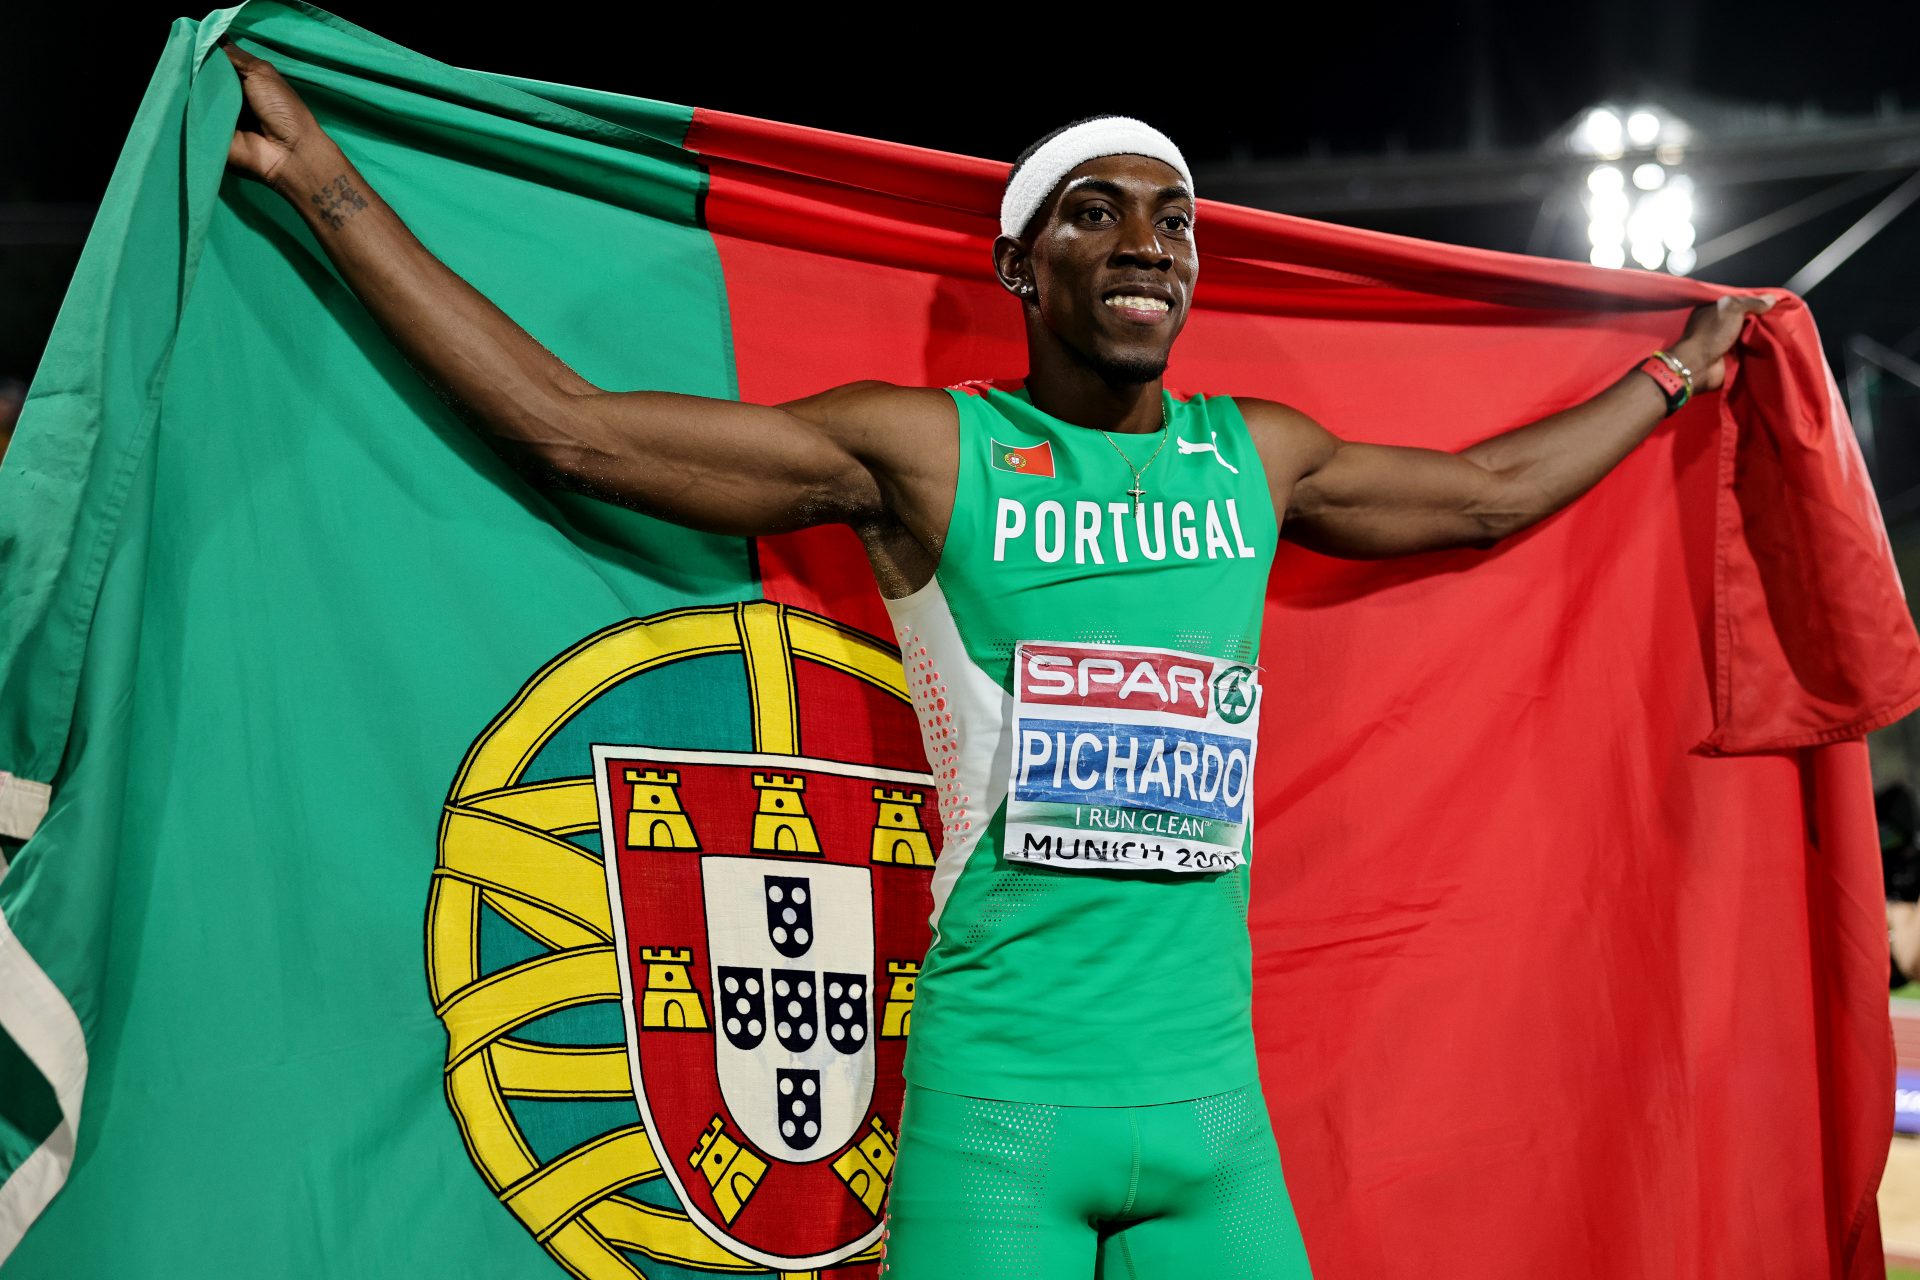 Atletas portugueses com mais chances de pódio em Paris 2024